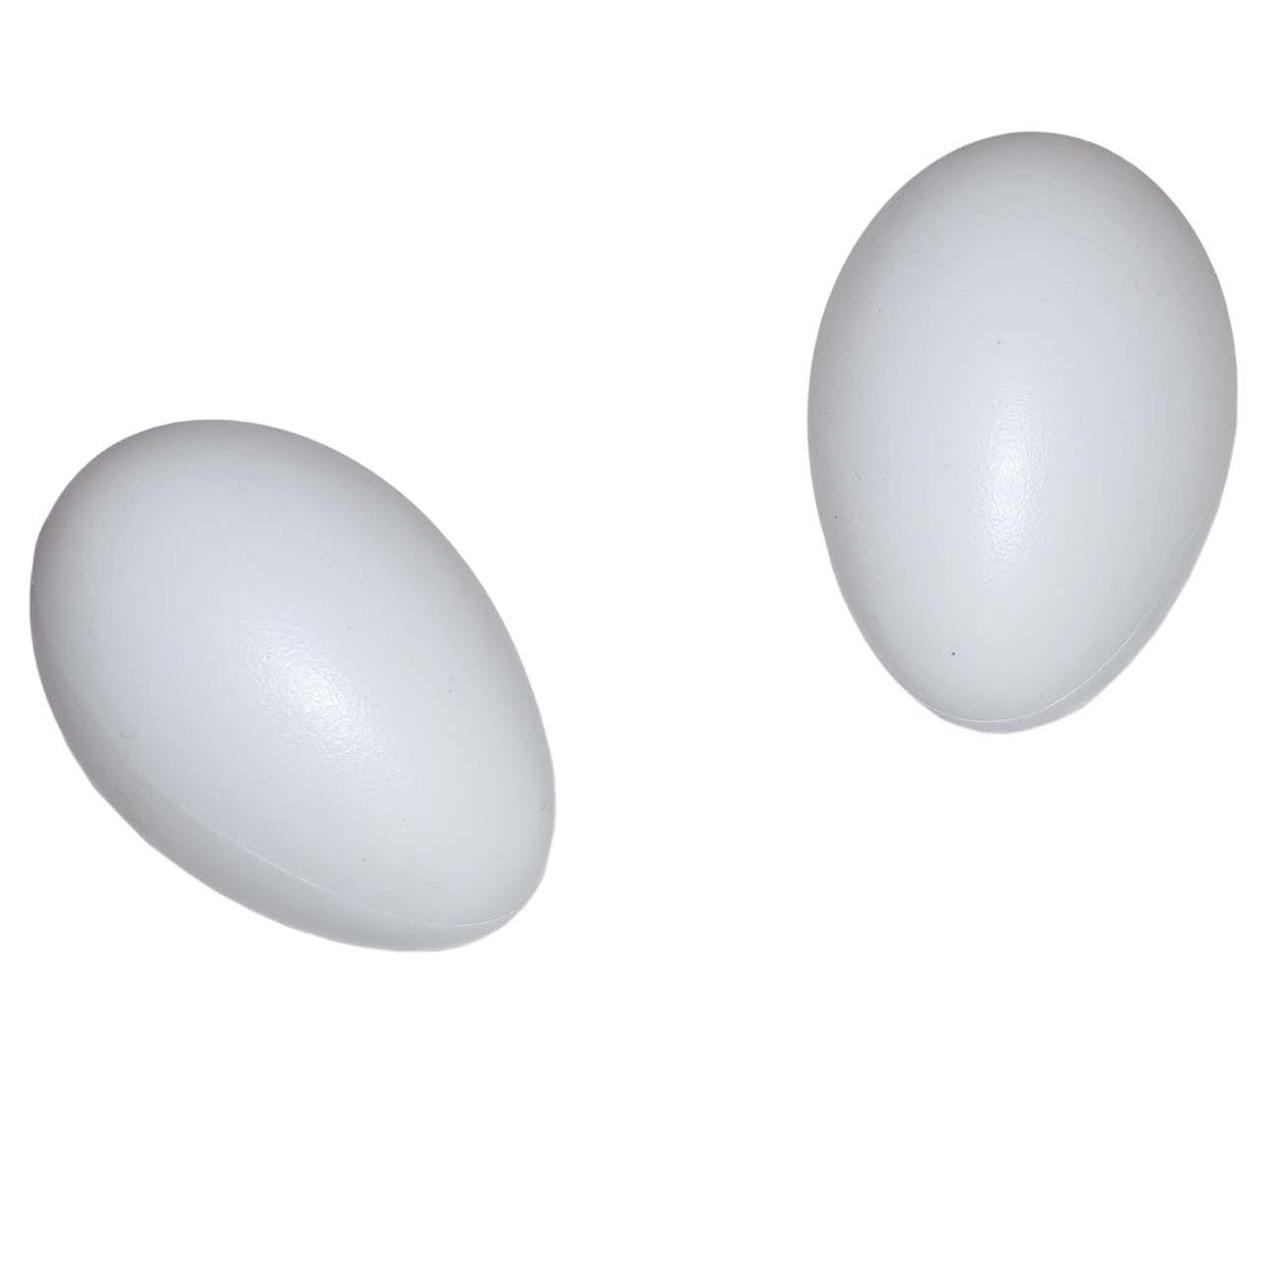 Яйцо подкладное гусиное